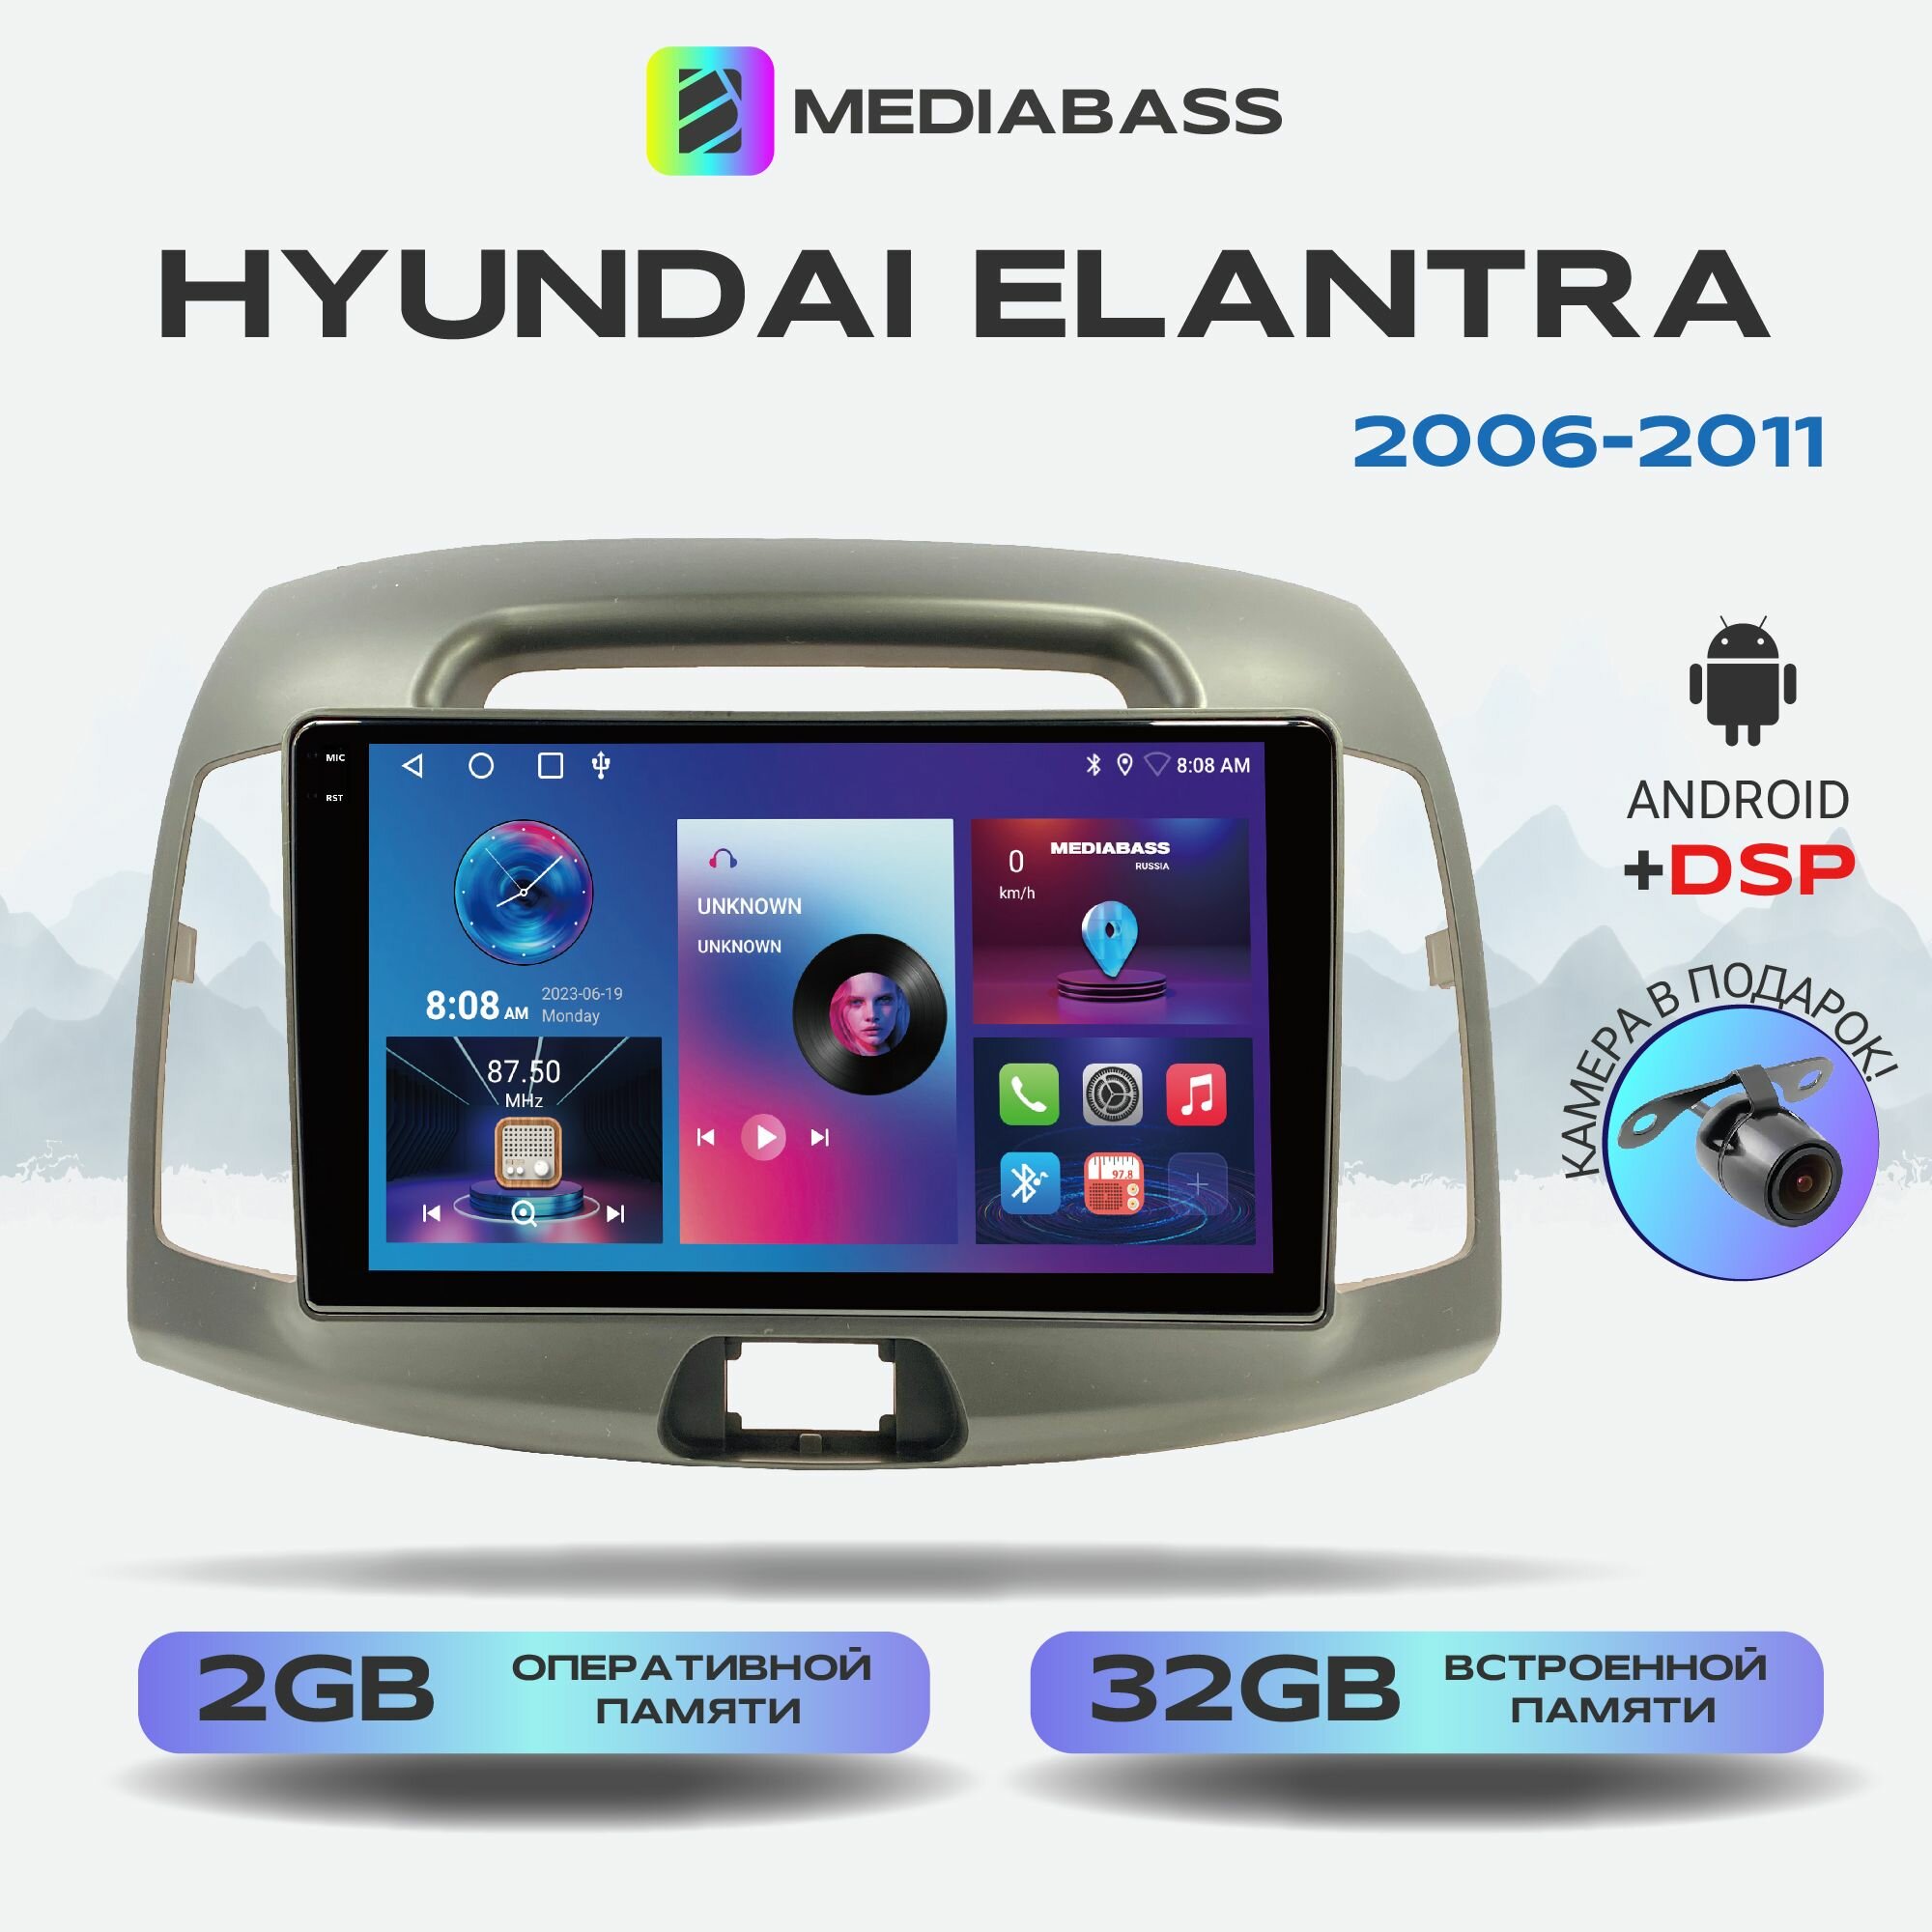 Автомагнитола Mediabass PRO Hyundai Elantra 2006-2011, Android 12, 2/32ГБ / Хендай Элентра, 4-ядерный процессор, QLED экран с разрешением 1280*720, DSP, чип-усилитель YD7388